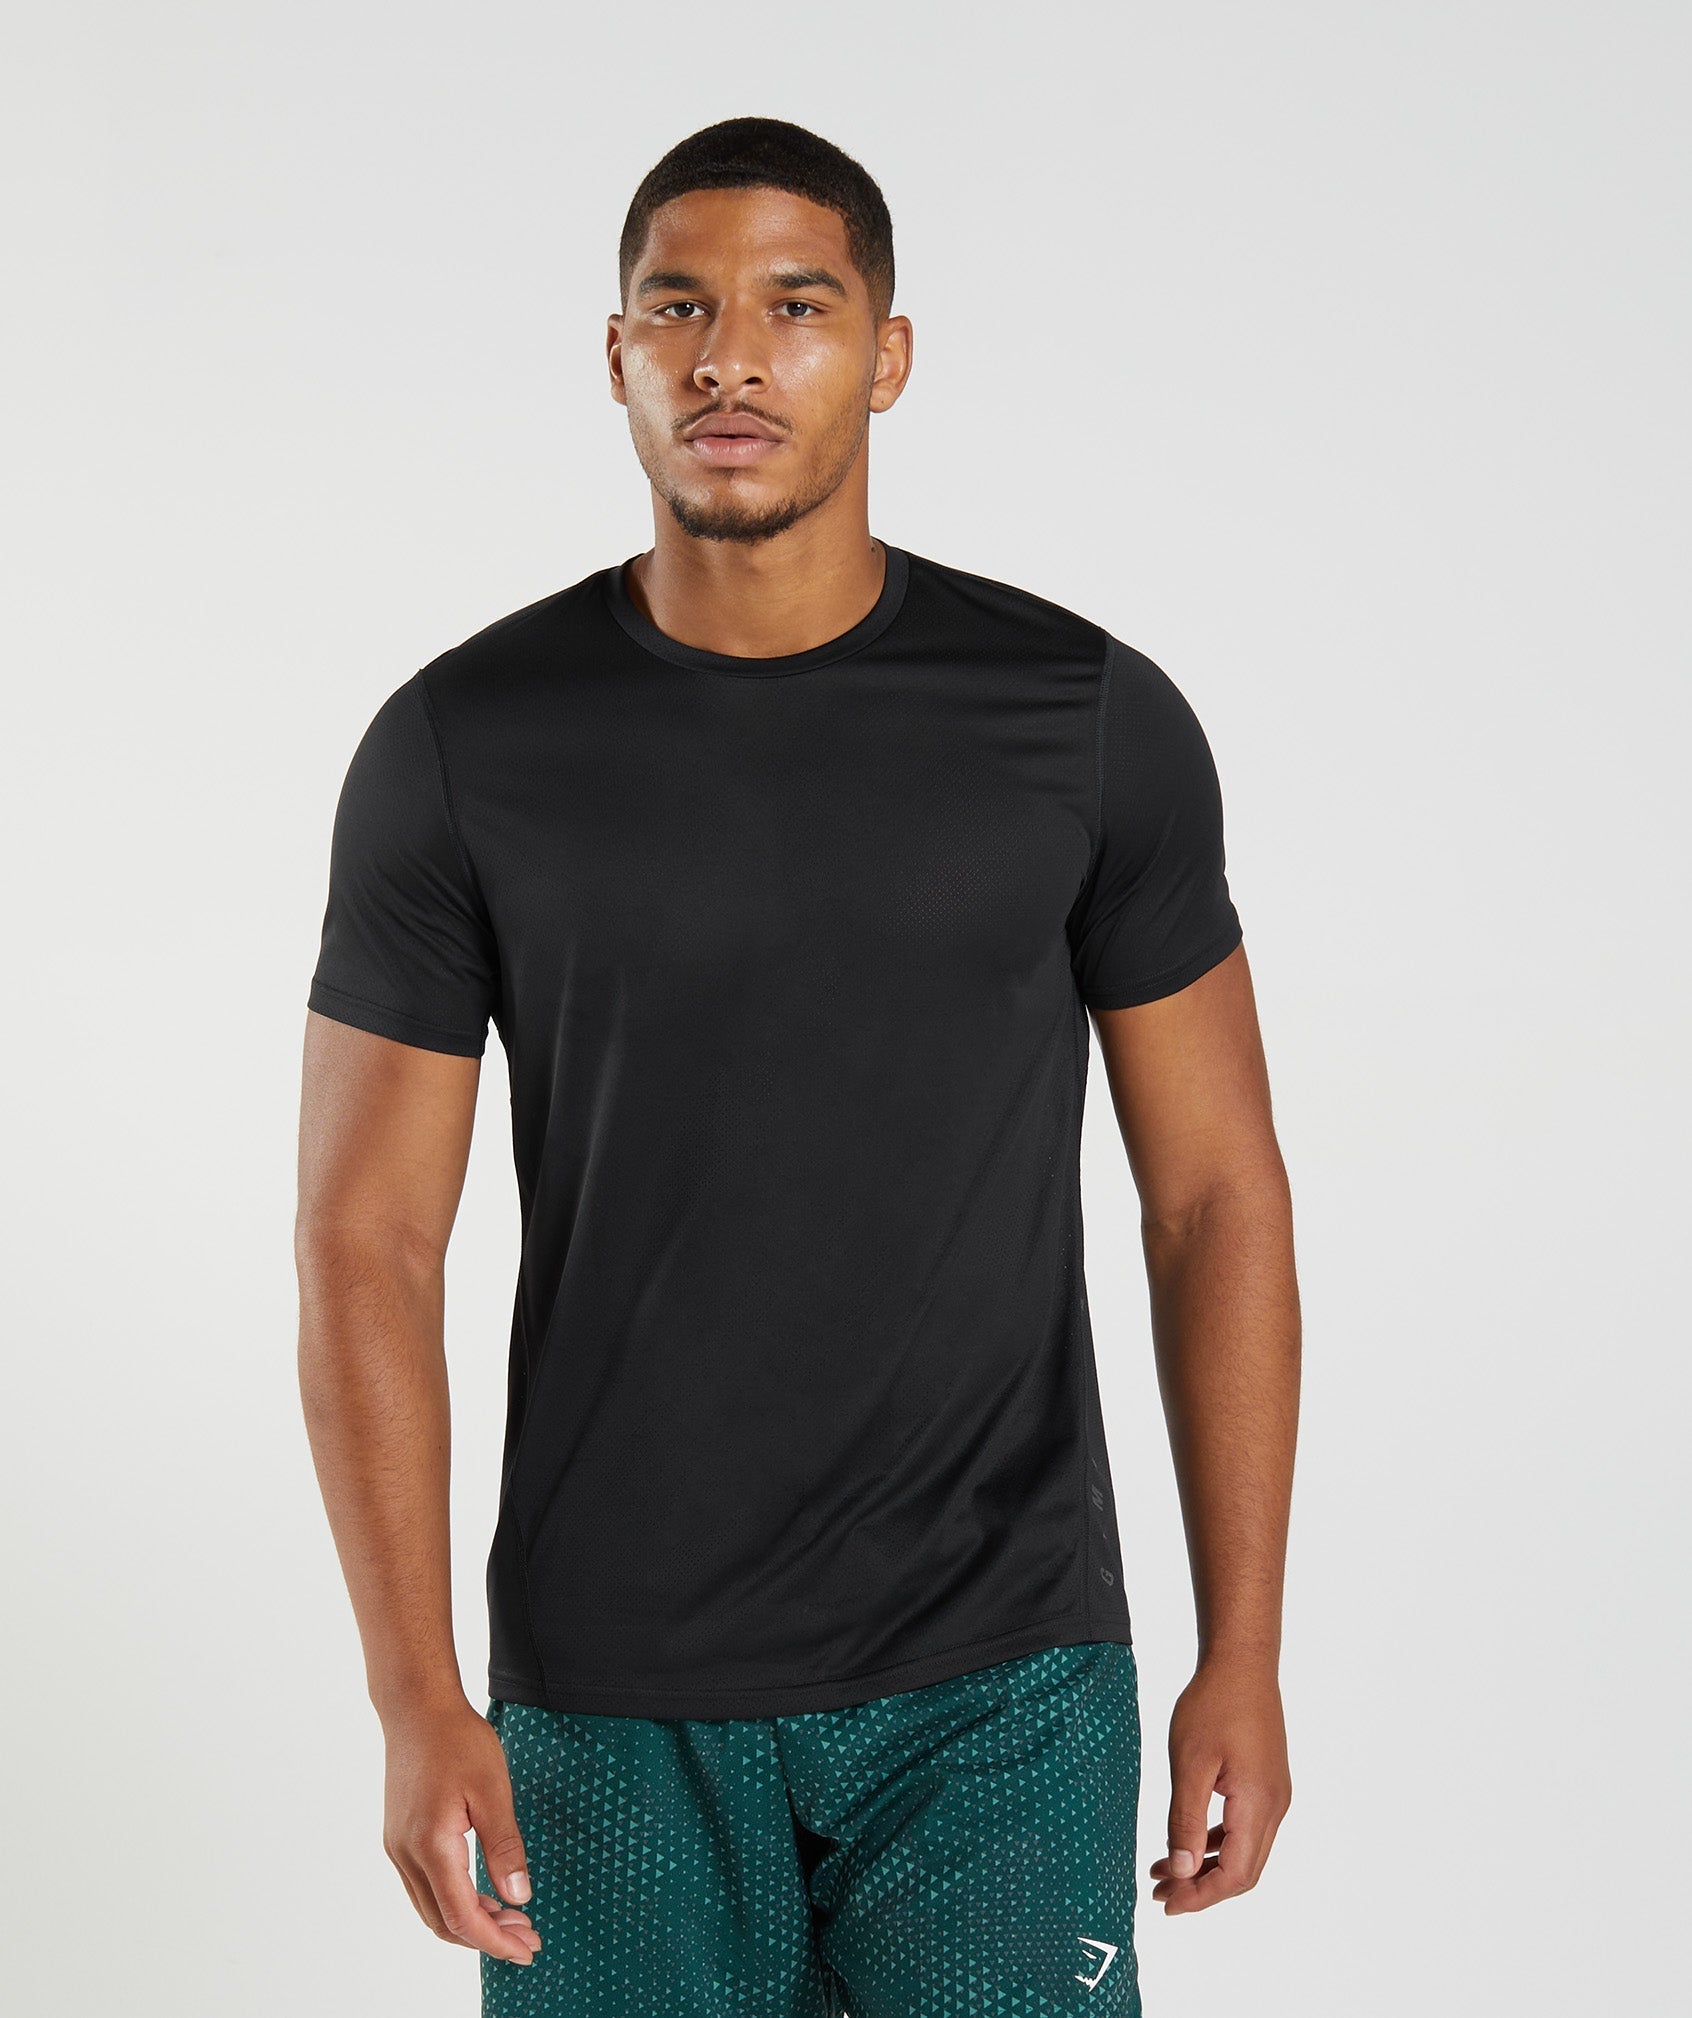 Jet Black Sports T-Shirt  Men's Activewear & Sportswear